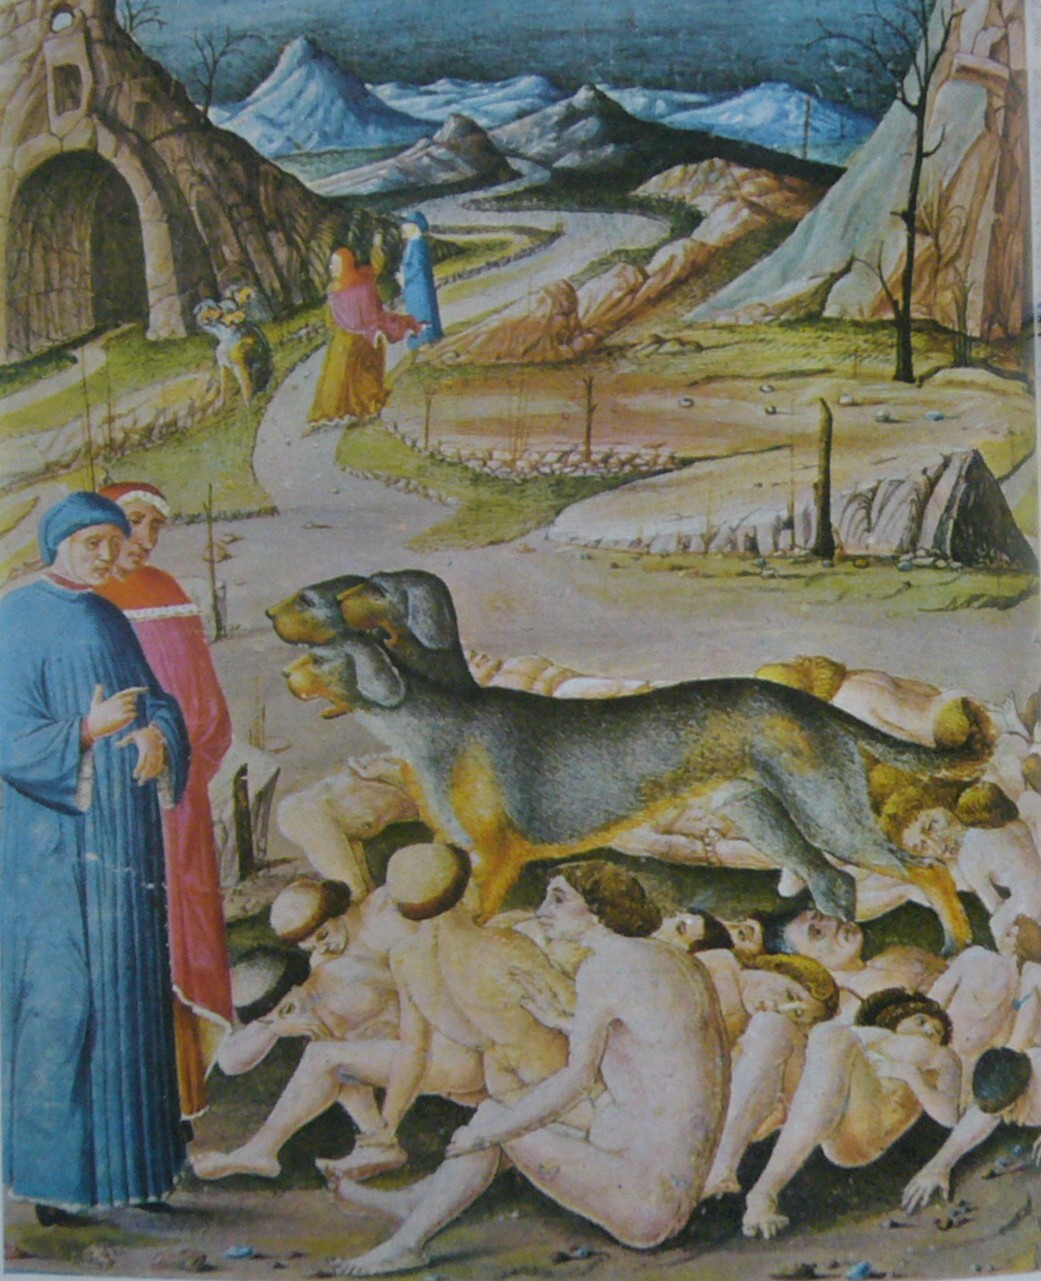 GOLOSI [Miniatura ferrarese, 1474-1482]